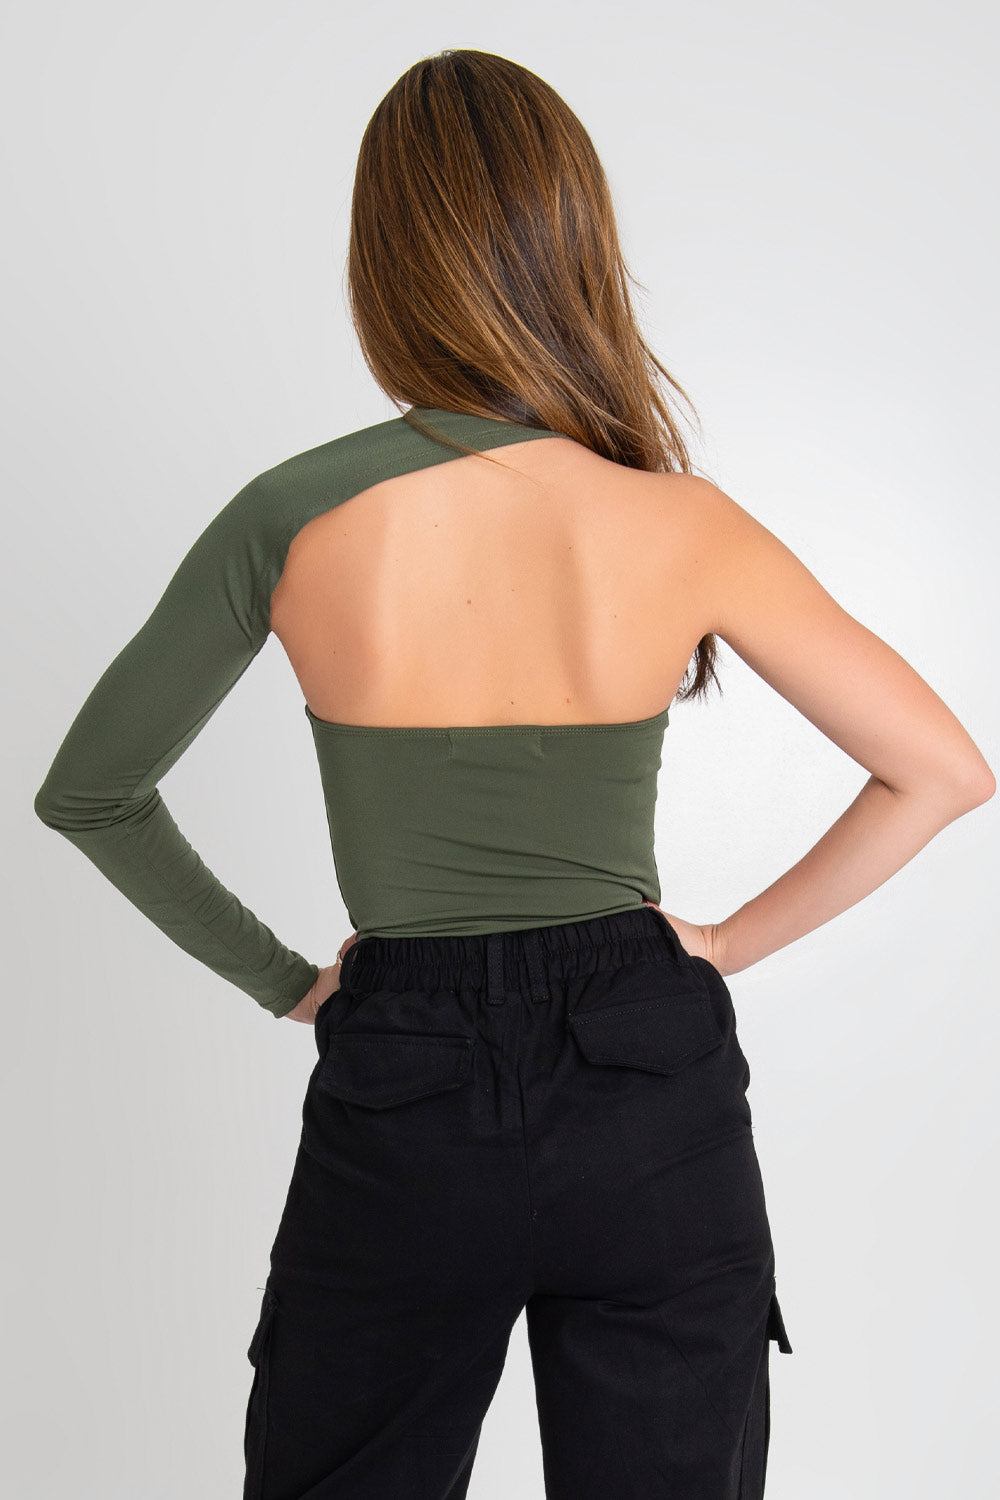 Body asimétrico de un hombro, manga larga, fit ajustado, cut out frontal y escote recto en espalda.